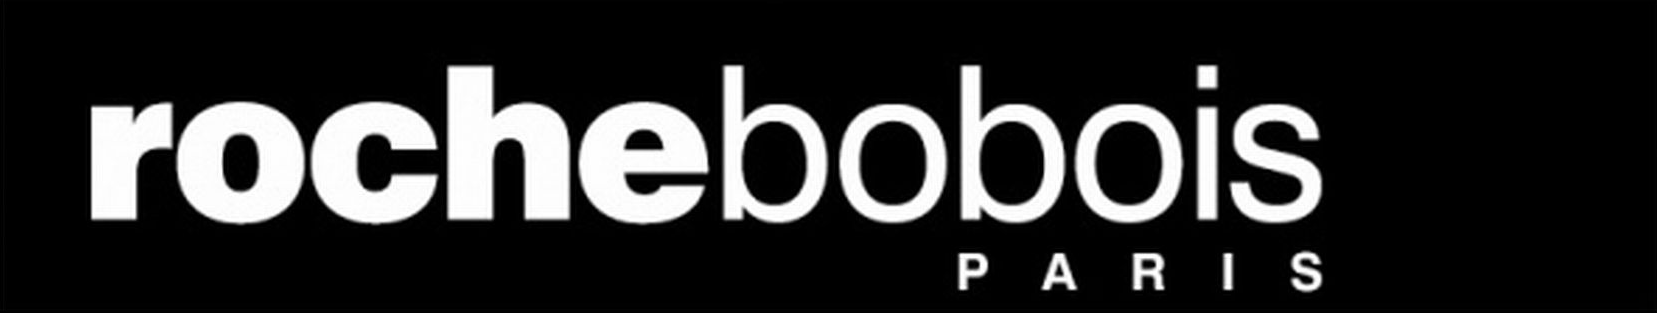 Invalio-Roche-Bobois-logo.png